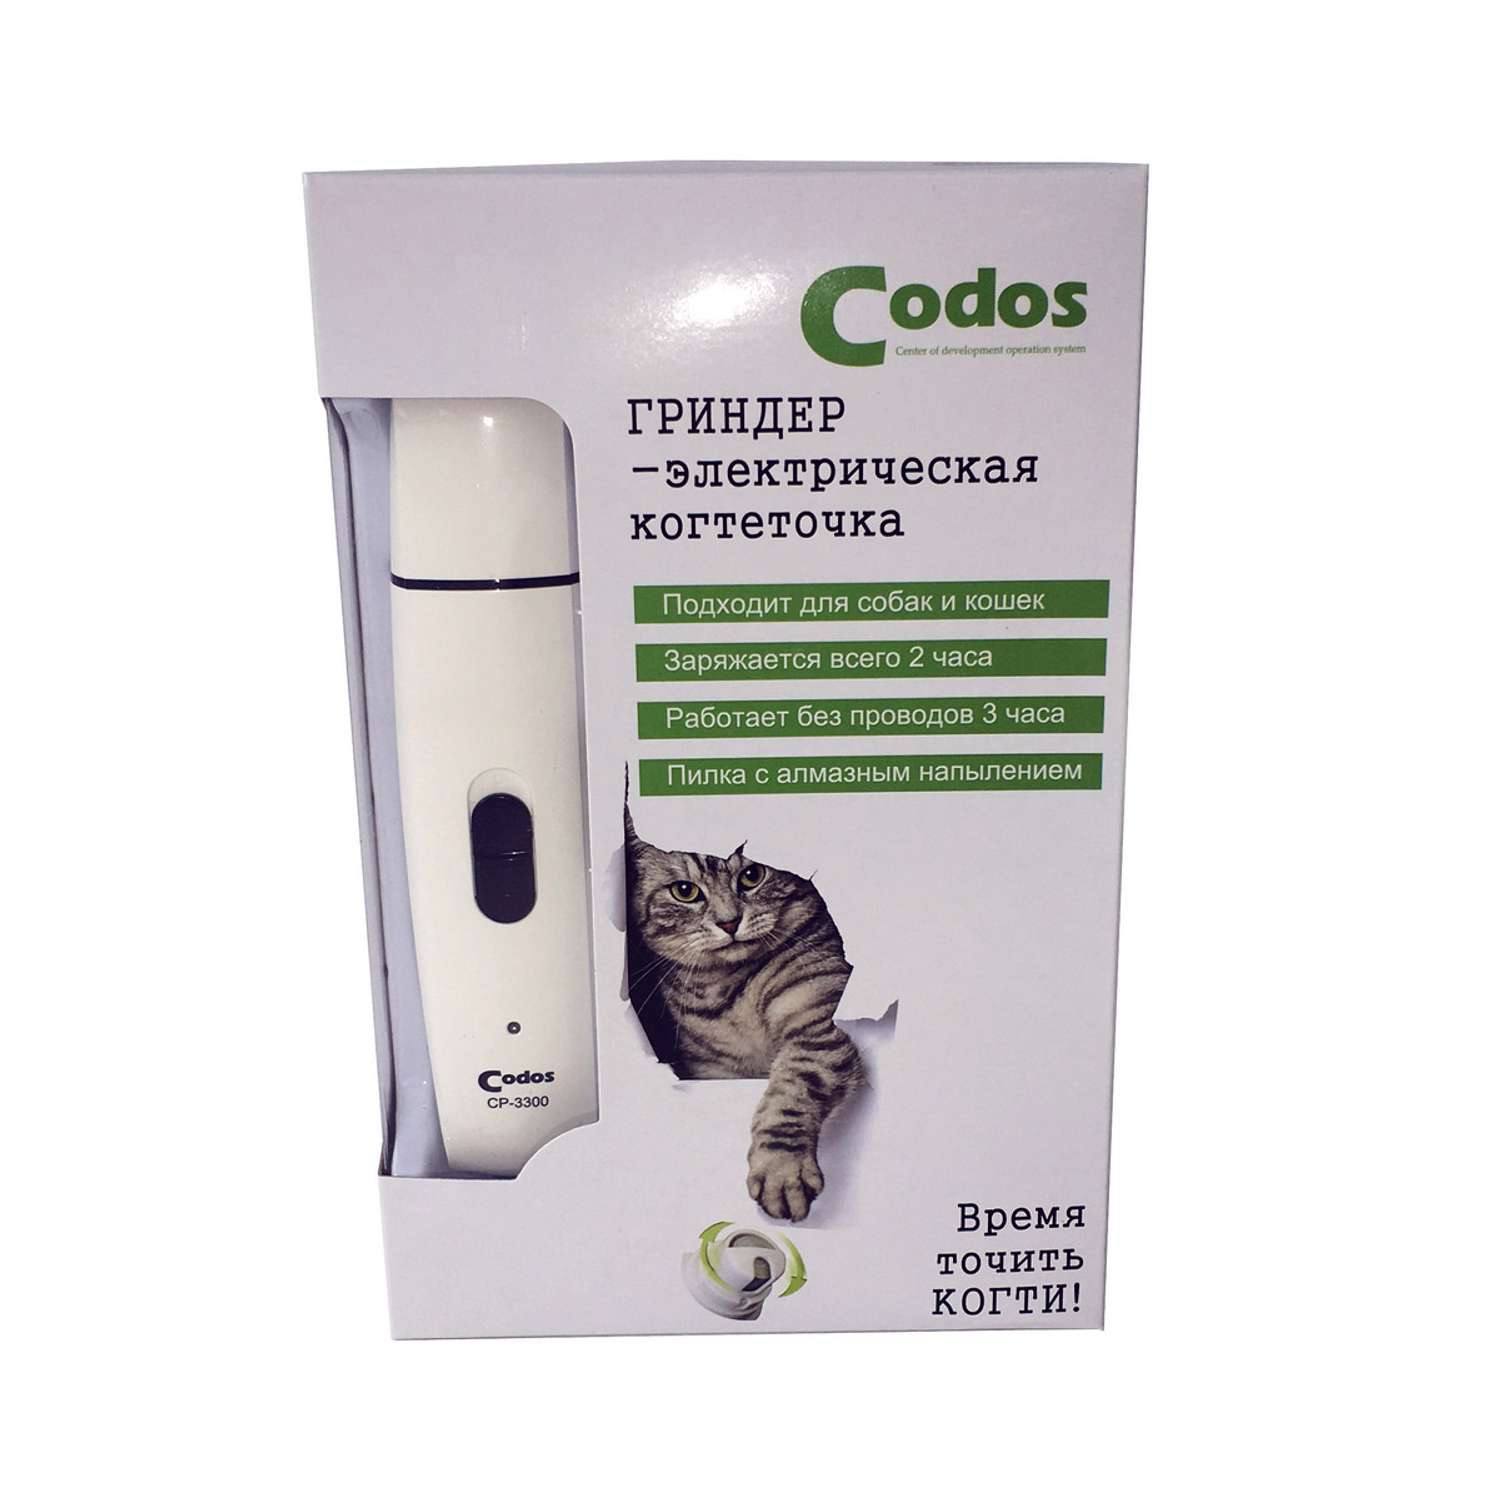 Гриндер для собак и кошек CODOS CP-3300 - фото 1